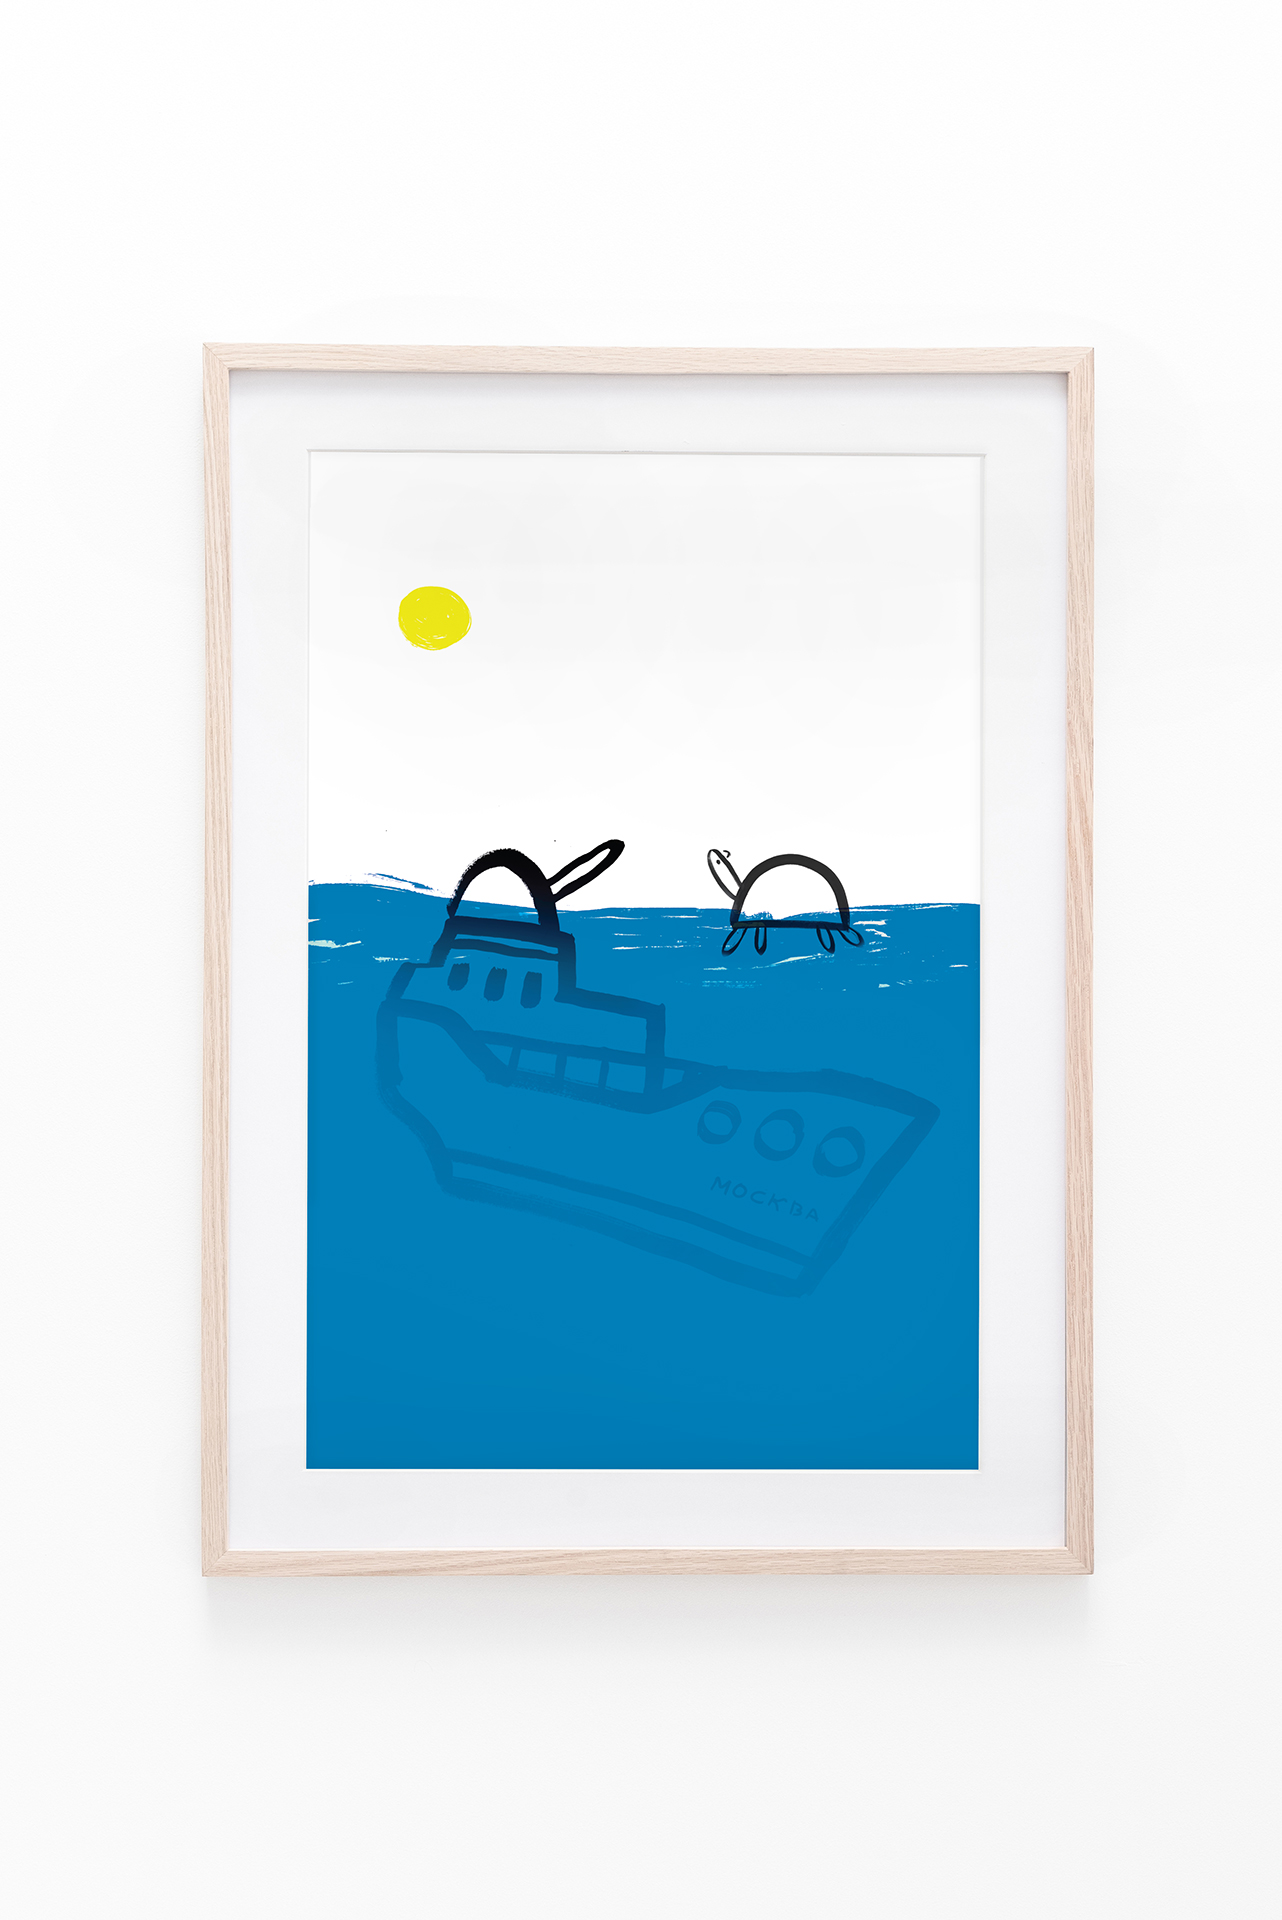 Plakat w drewnianej ramce; okręt wojenny tonący w morzu obok żółwia w słoneczny dzień.